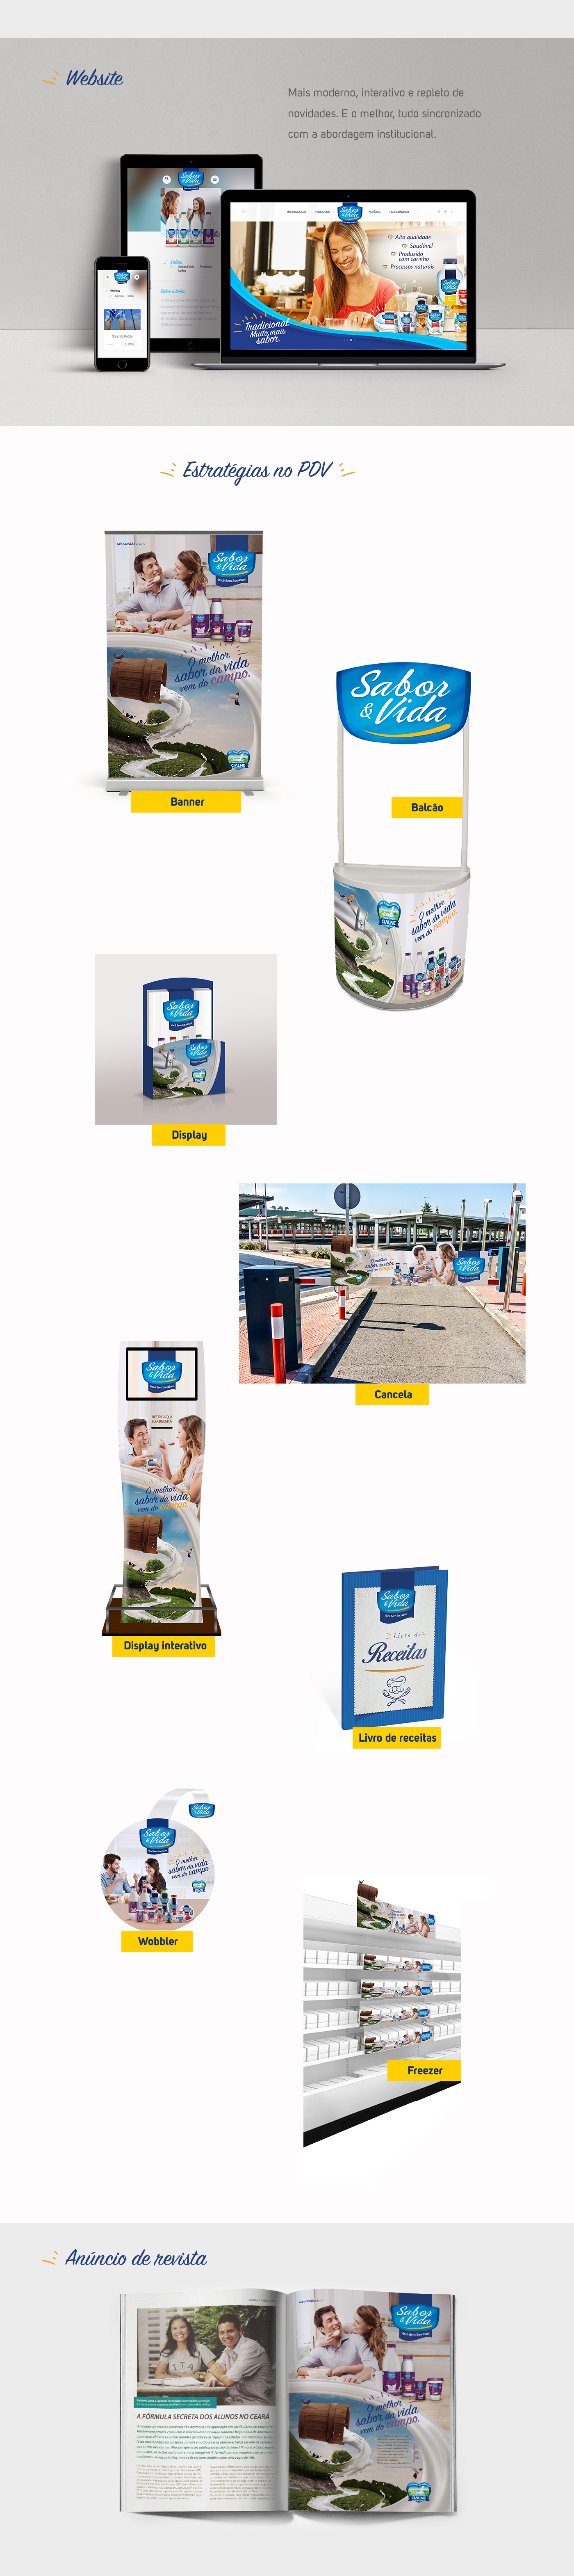 saborevida embalagem packing sabor&vida Ilustração cialne marca conceito campanha PDV